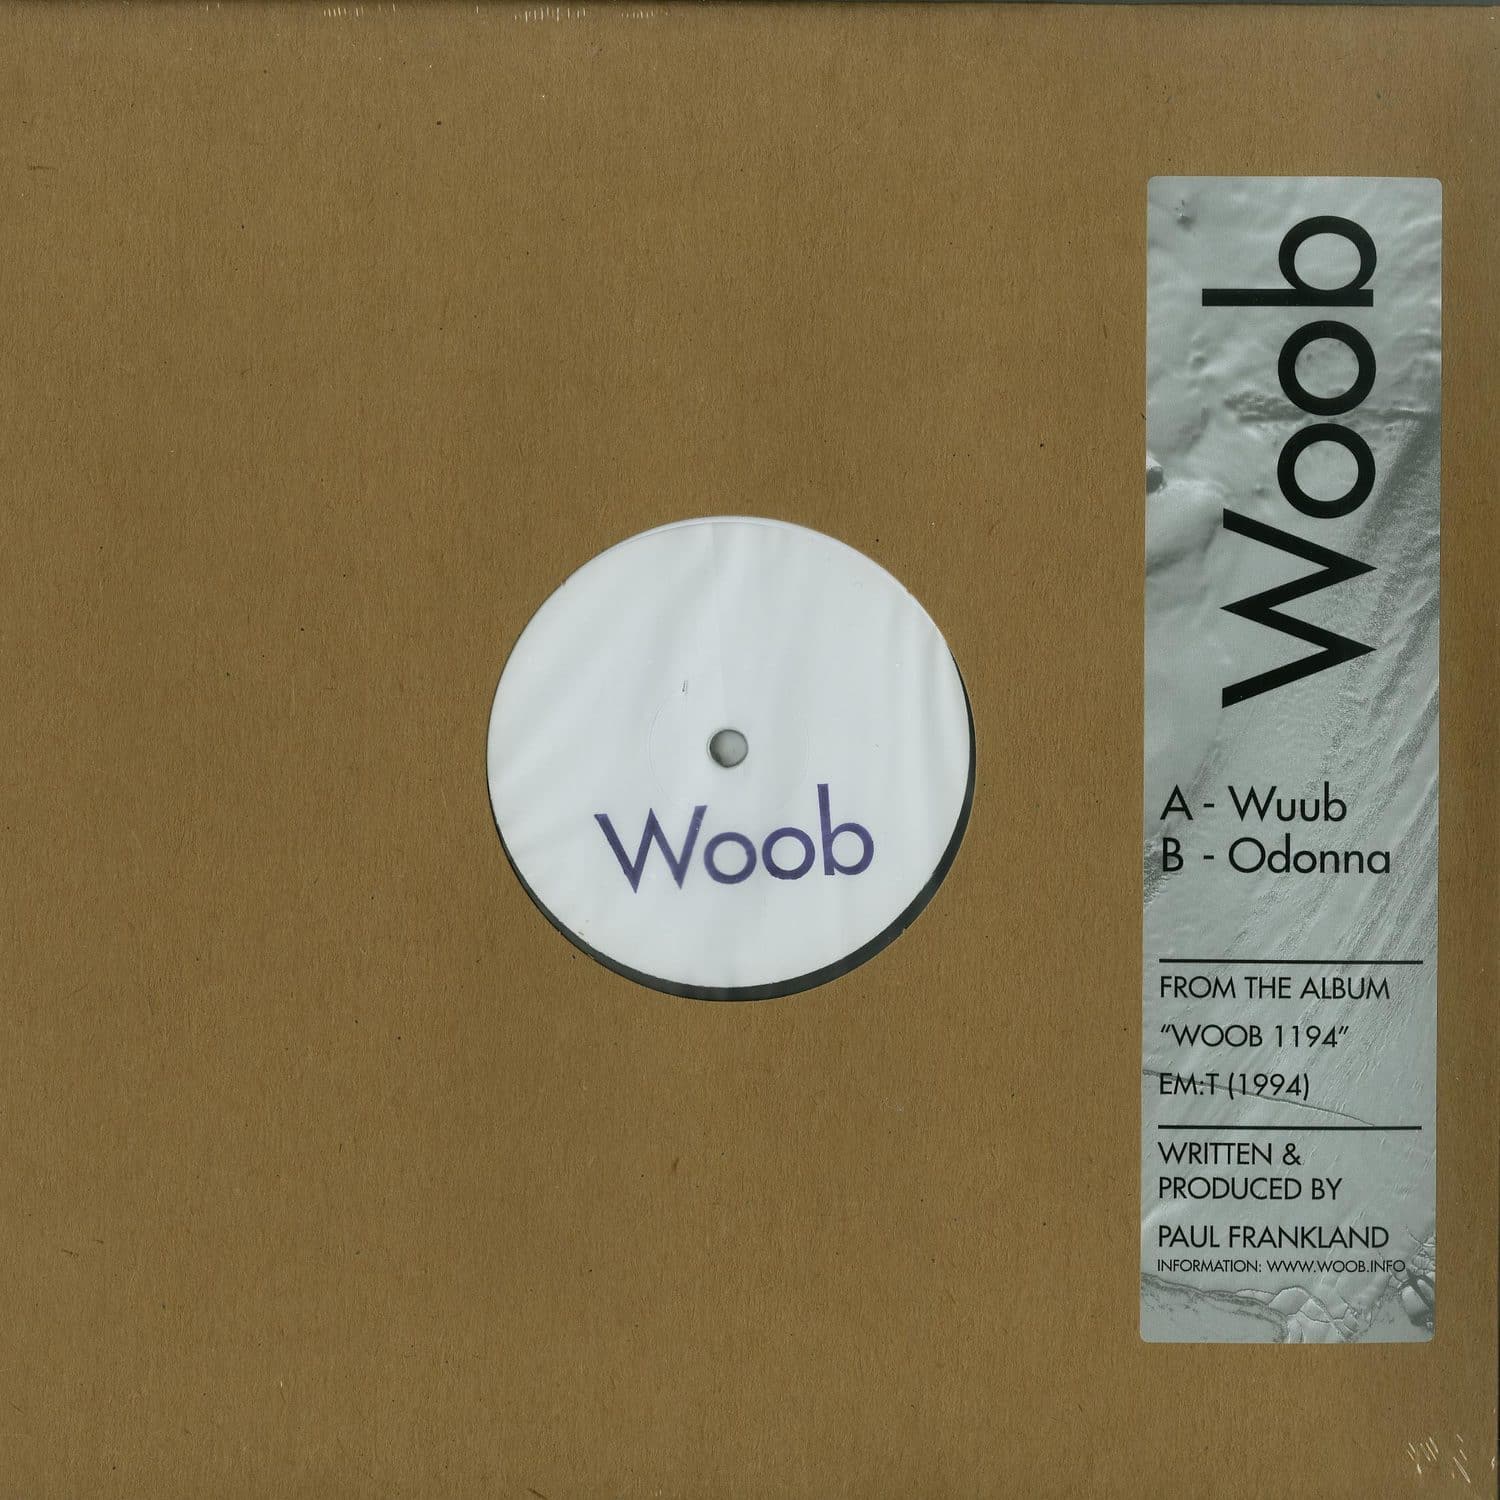 Woob - WUUB / ODONNA 